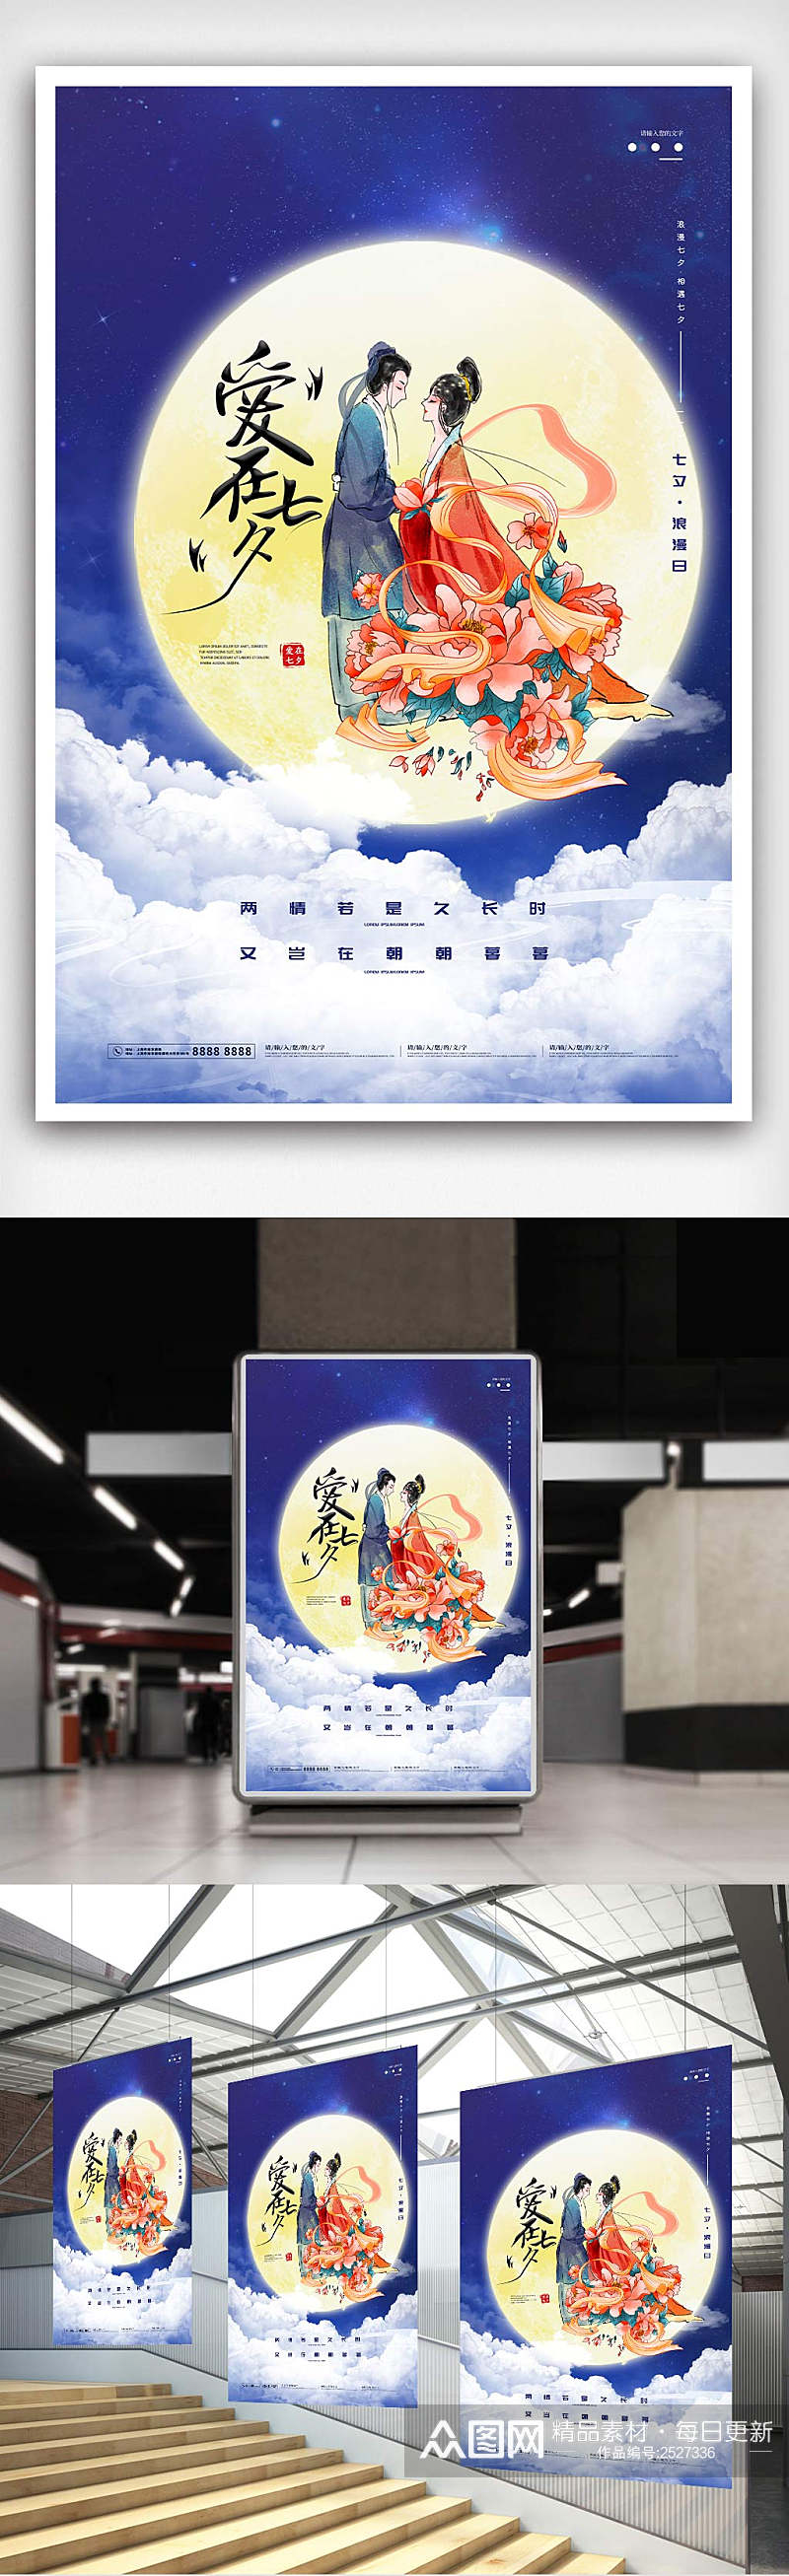 大气七夕情人节商场促销活动宣传海报素材